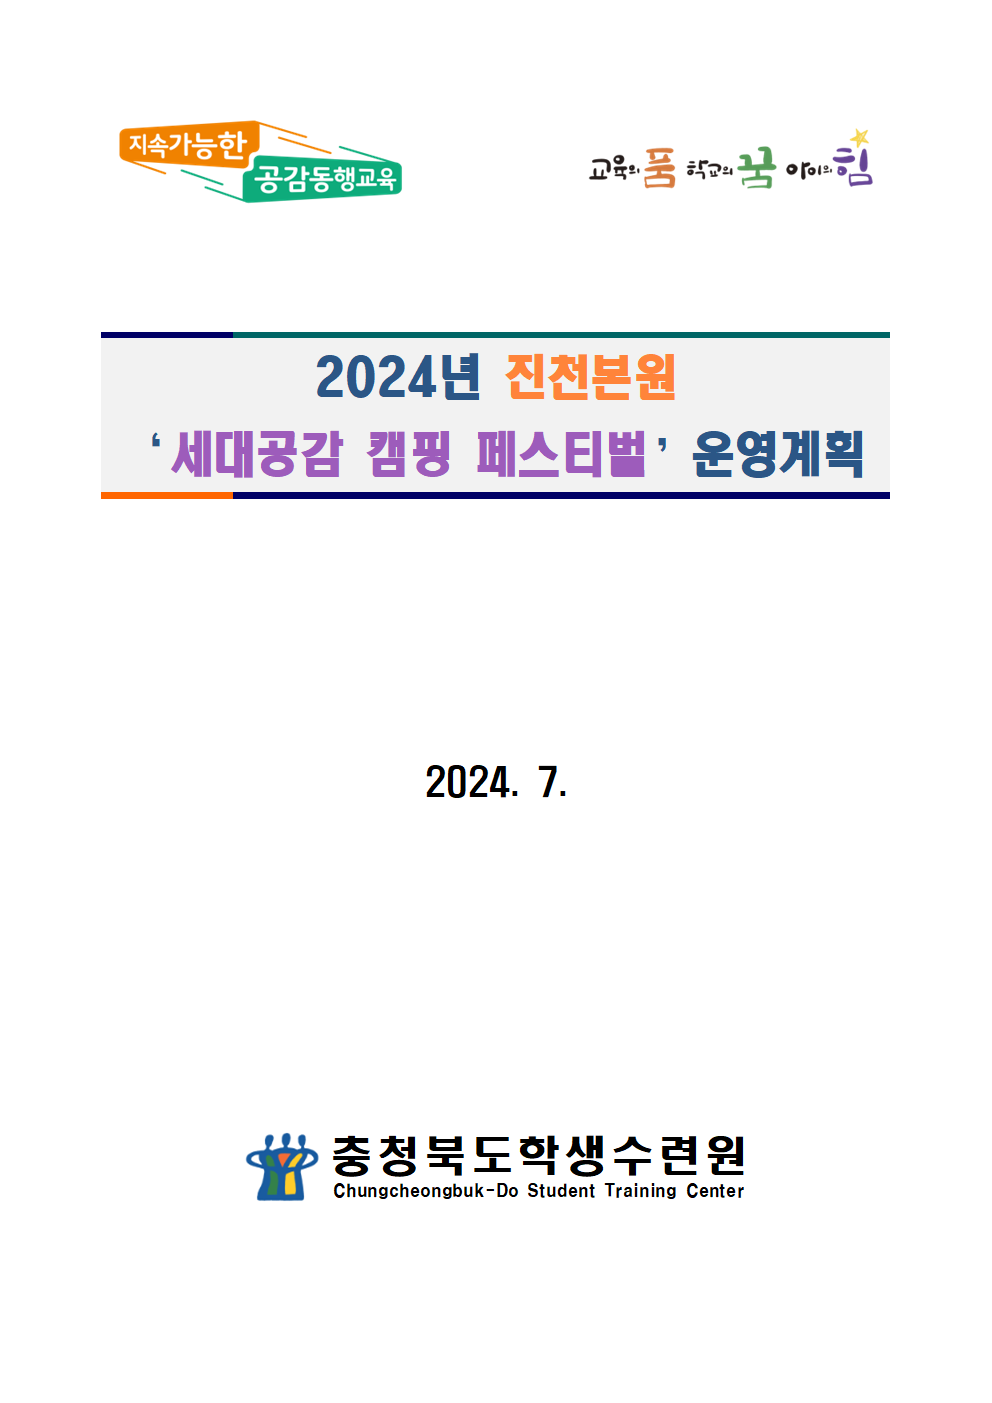 2024. 세대공감 캠핑 페스티벌 운영계획001